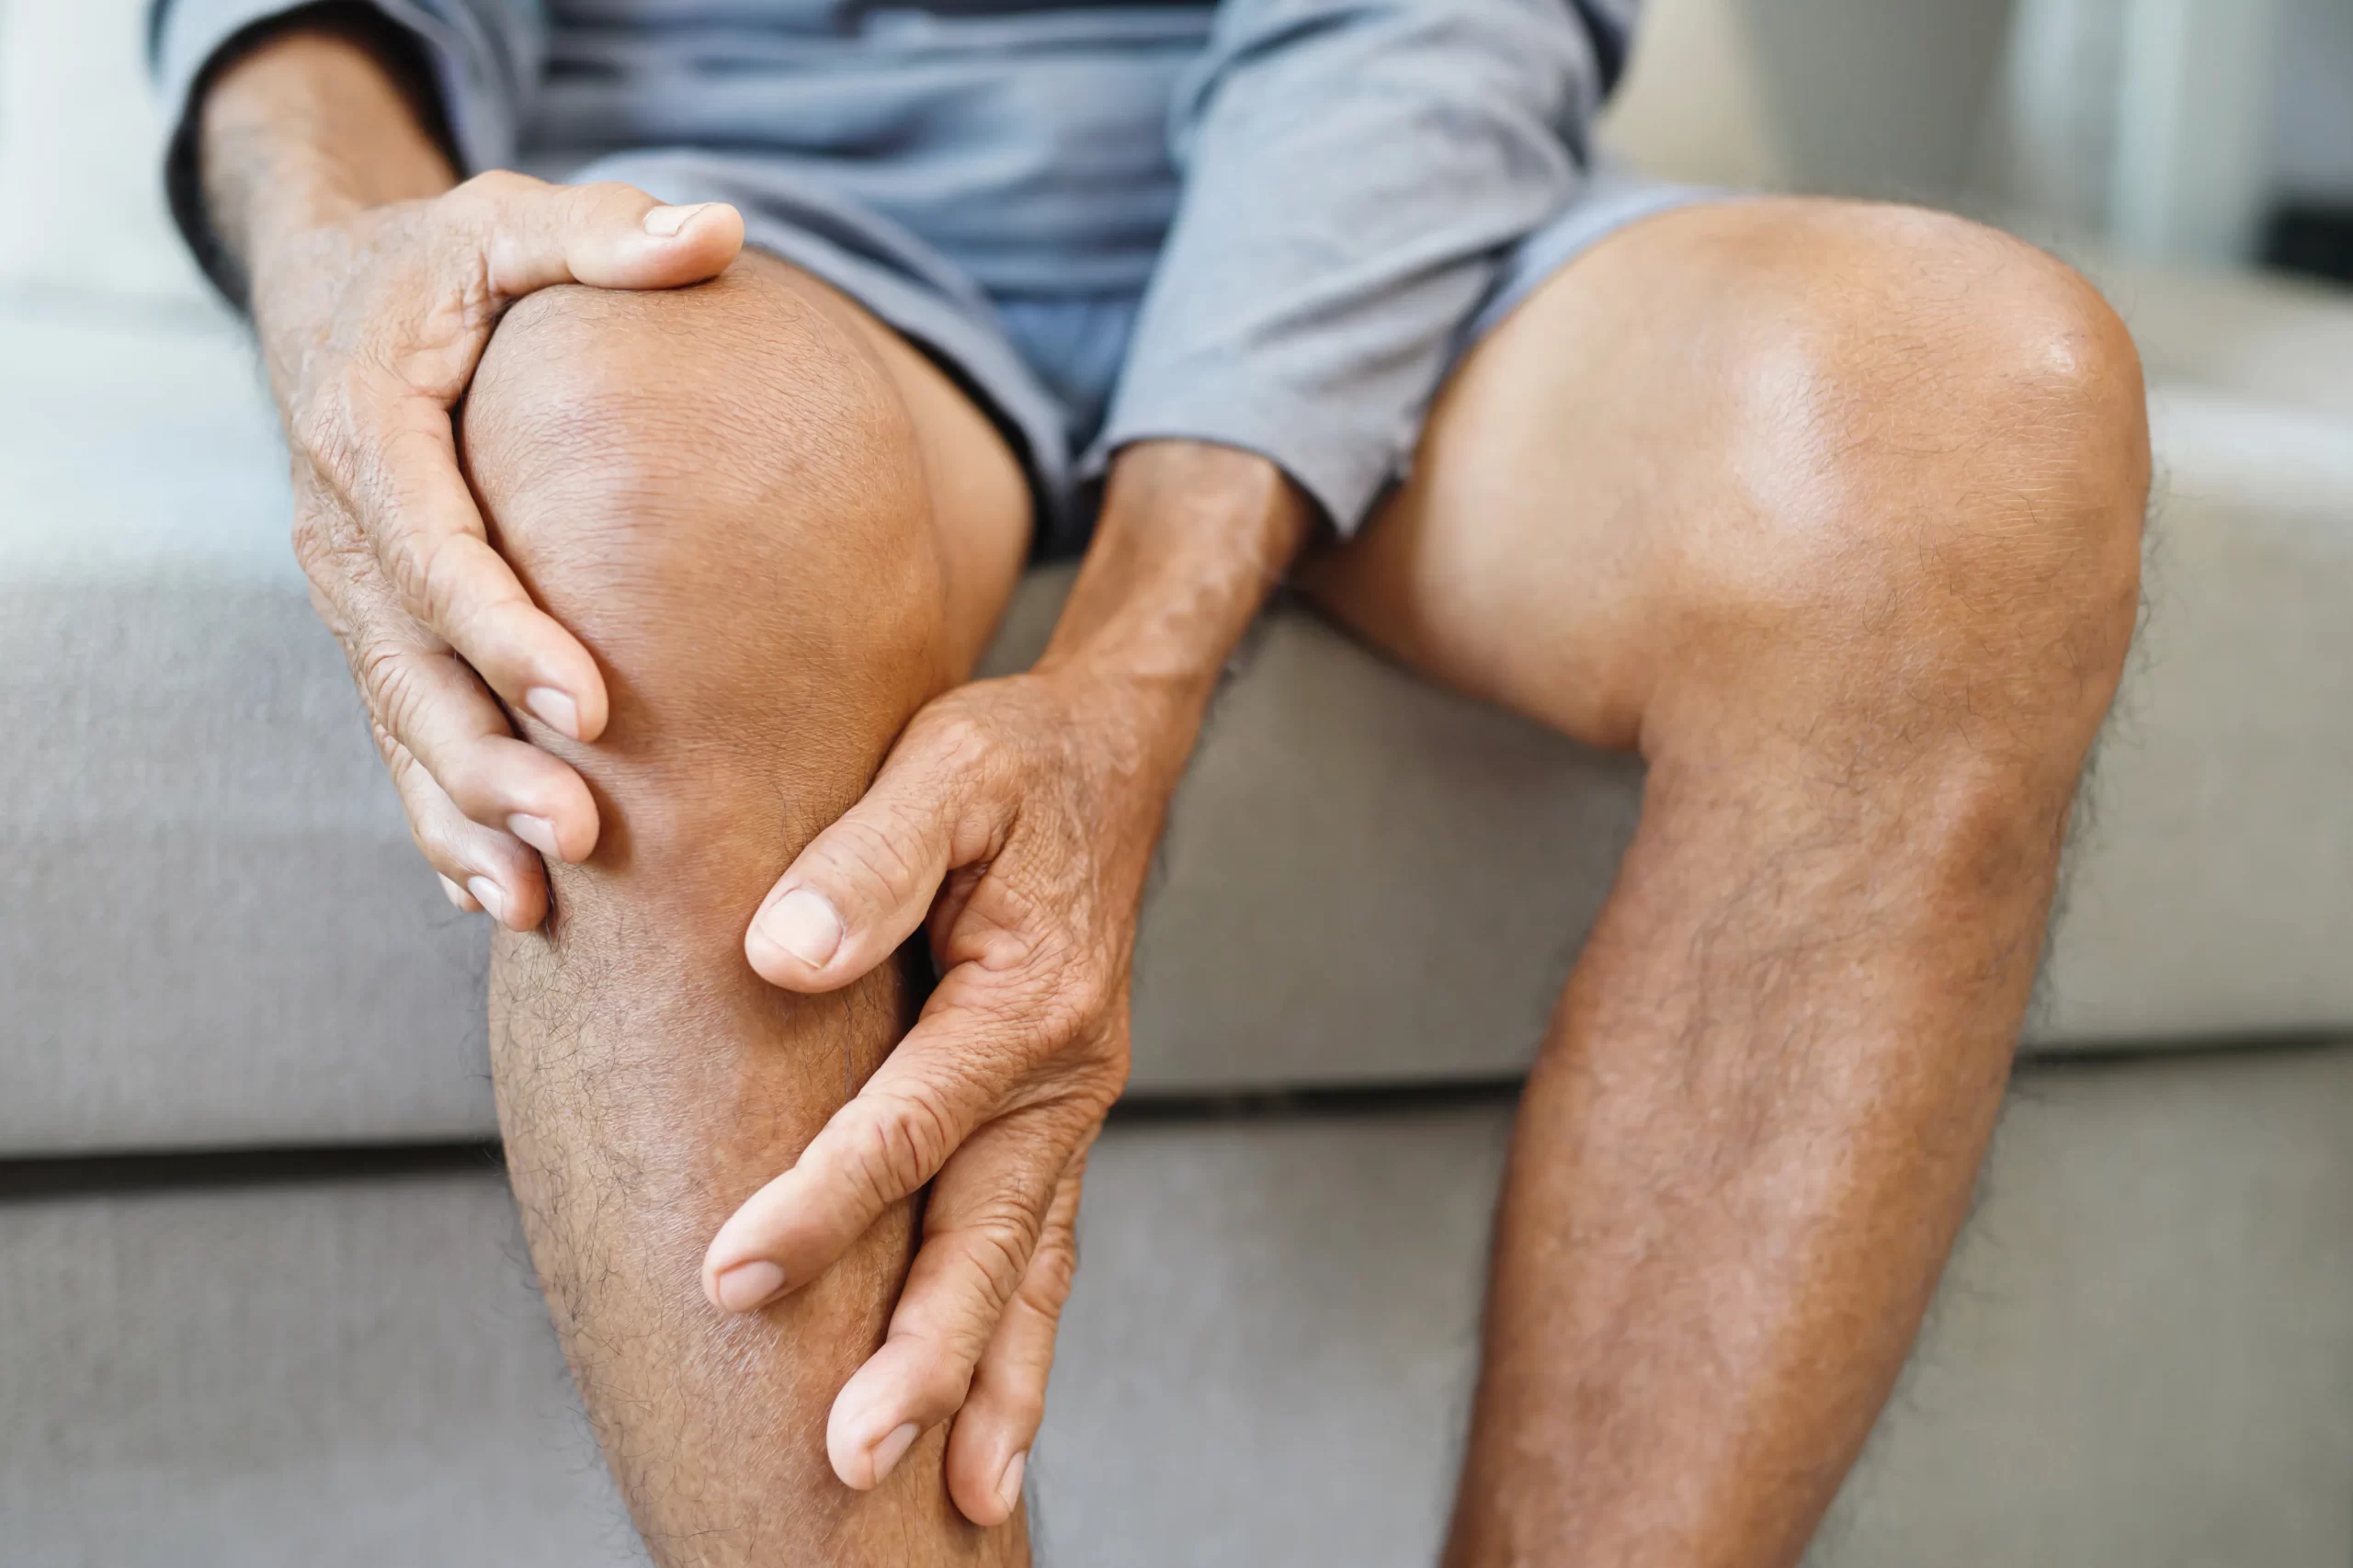 変形性膝関節症について